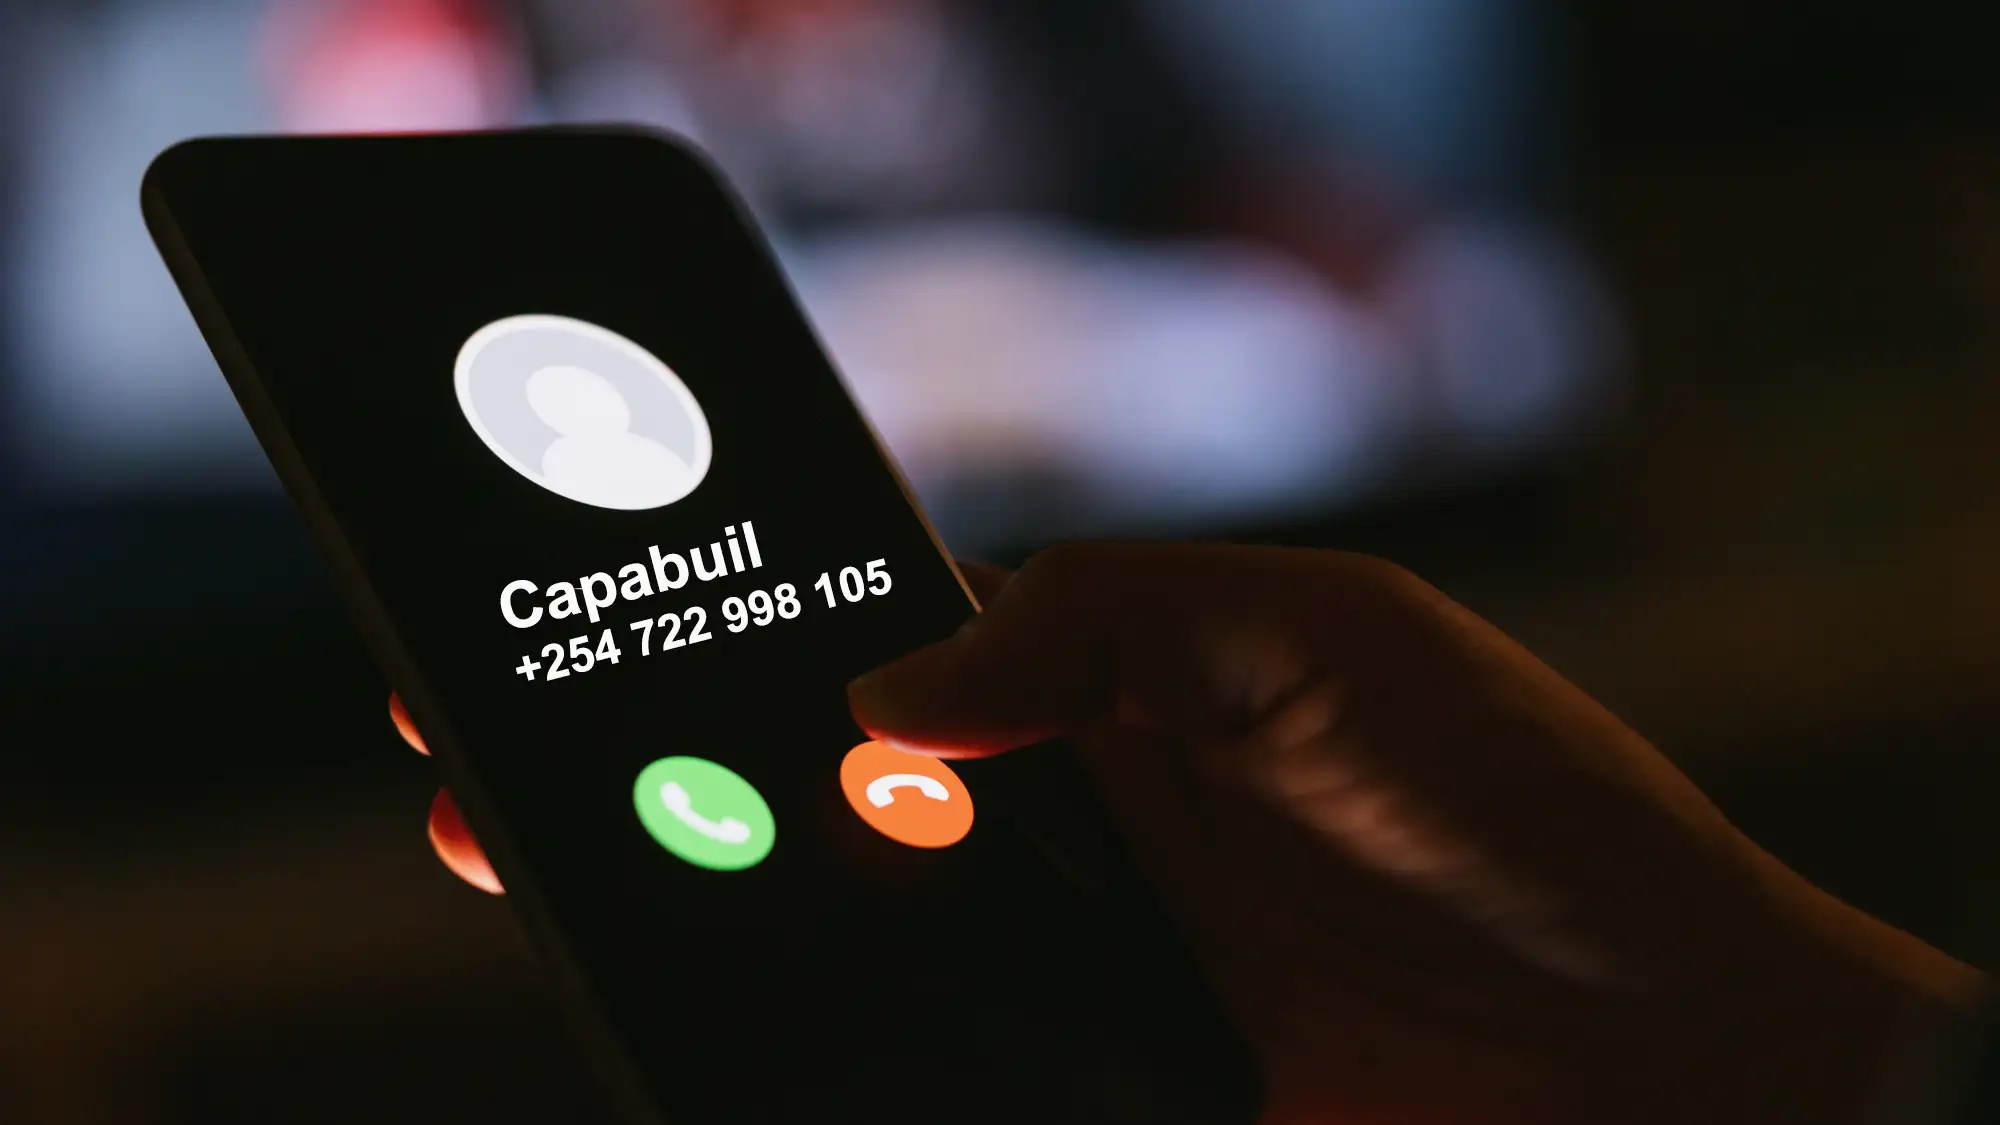 call us capabuil.com